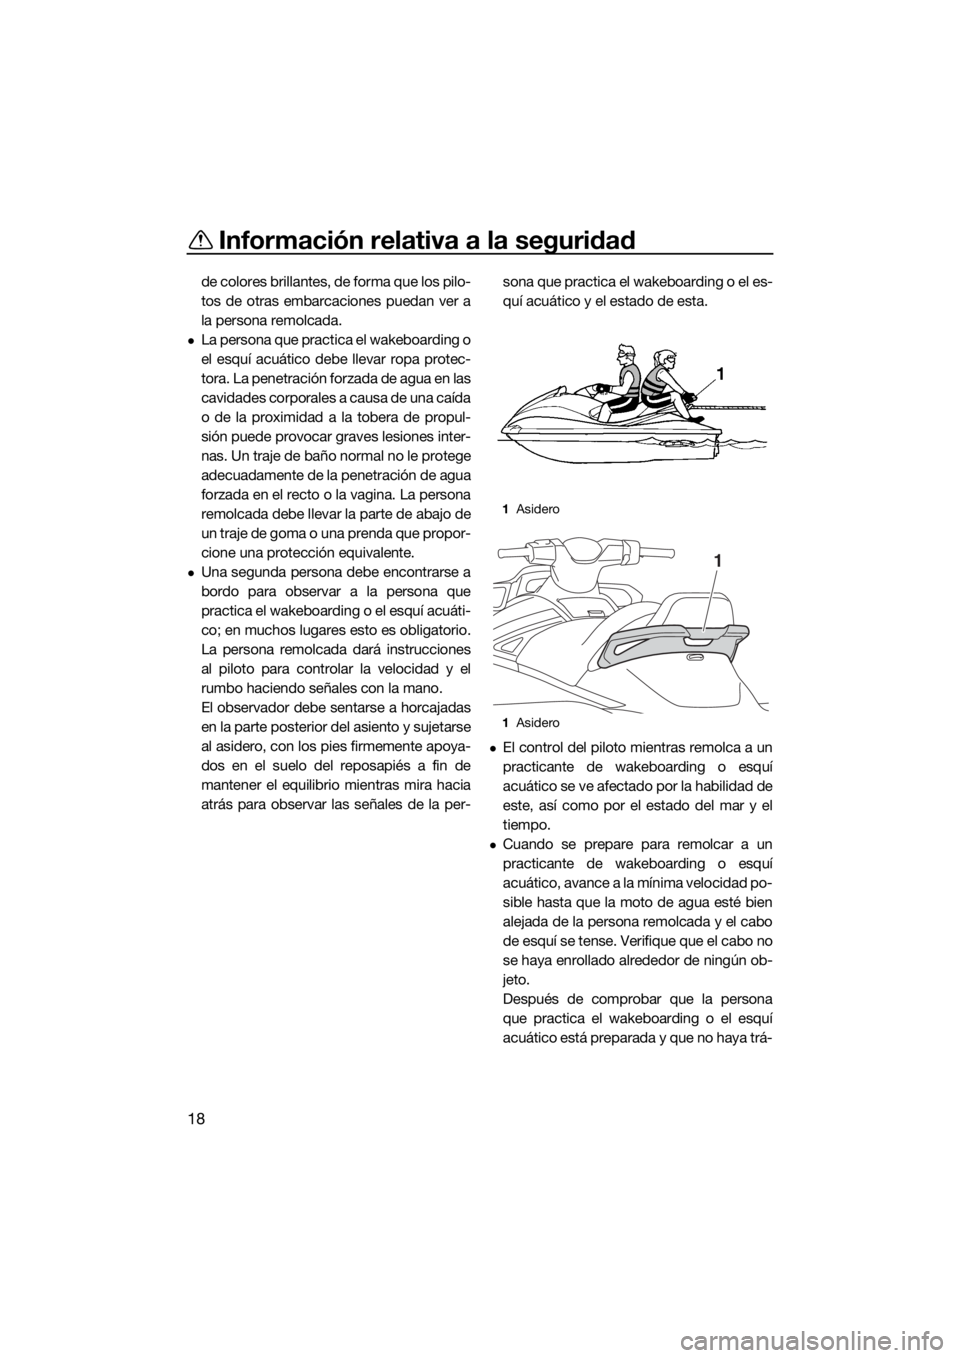 YAMAHA VX-C 2019  Manuale de Empleo (in Spanish) Información relativa a la seguridad
18
de colores brillantes, de forma que los pilo-
tos de otras embarcaciones puedan ver a
la persona remolcada.
La persona que practica el wakeboarding o
el esqu